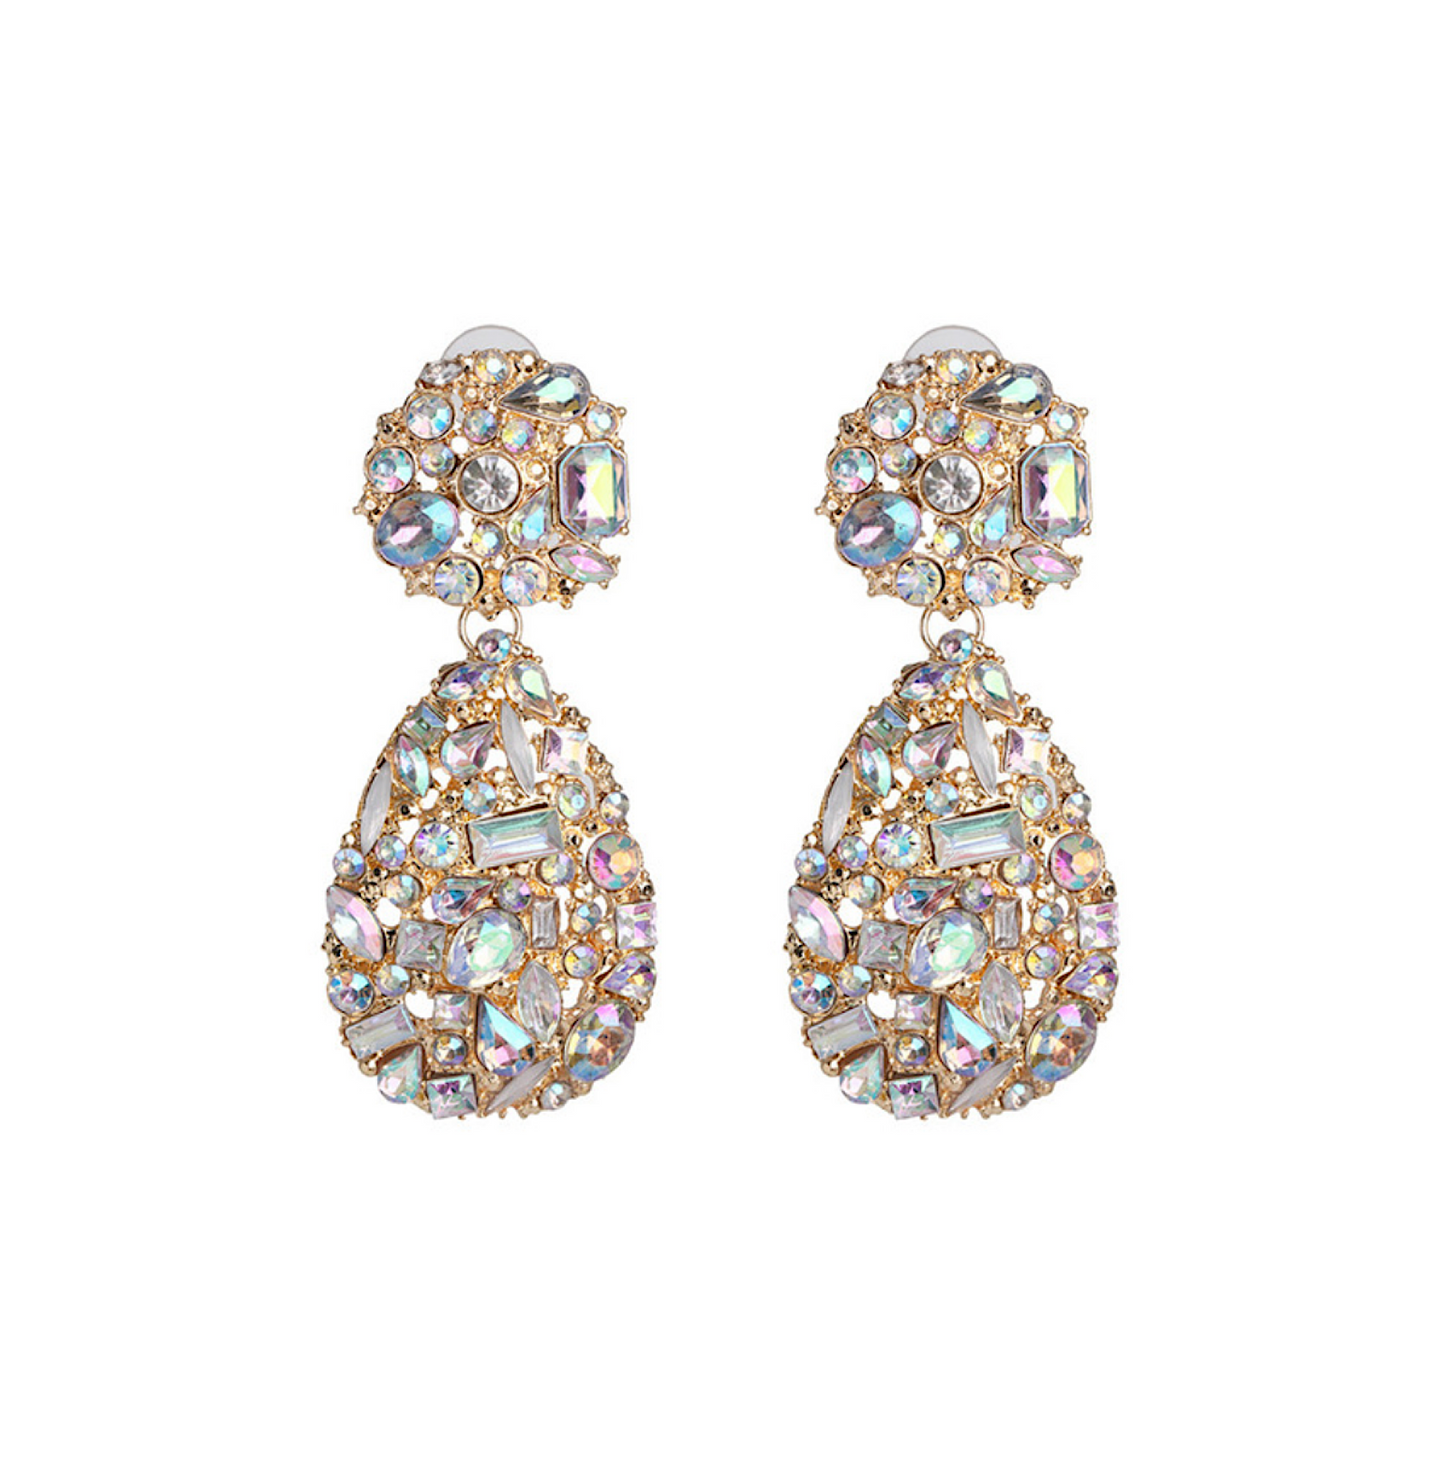 Goldtone & Iridescent Crystal Encrusted Teardrop Earrings